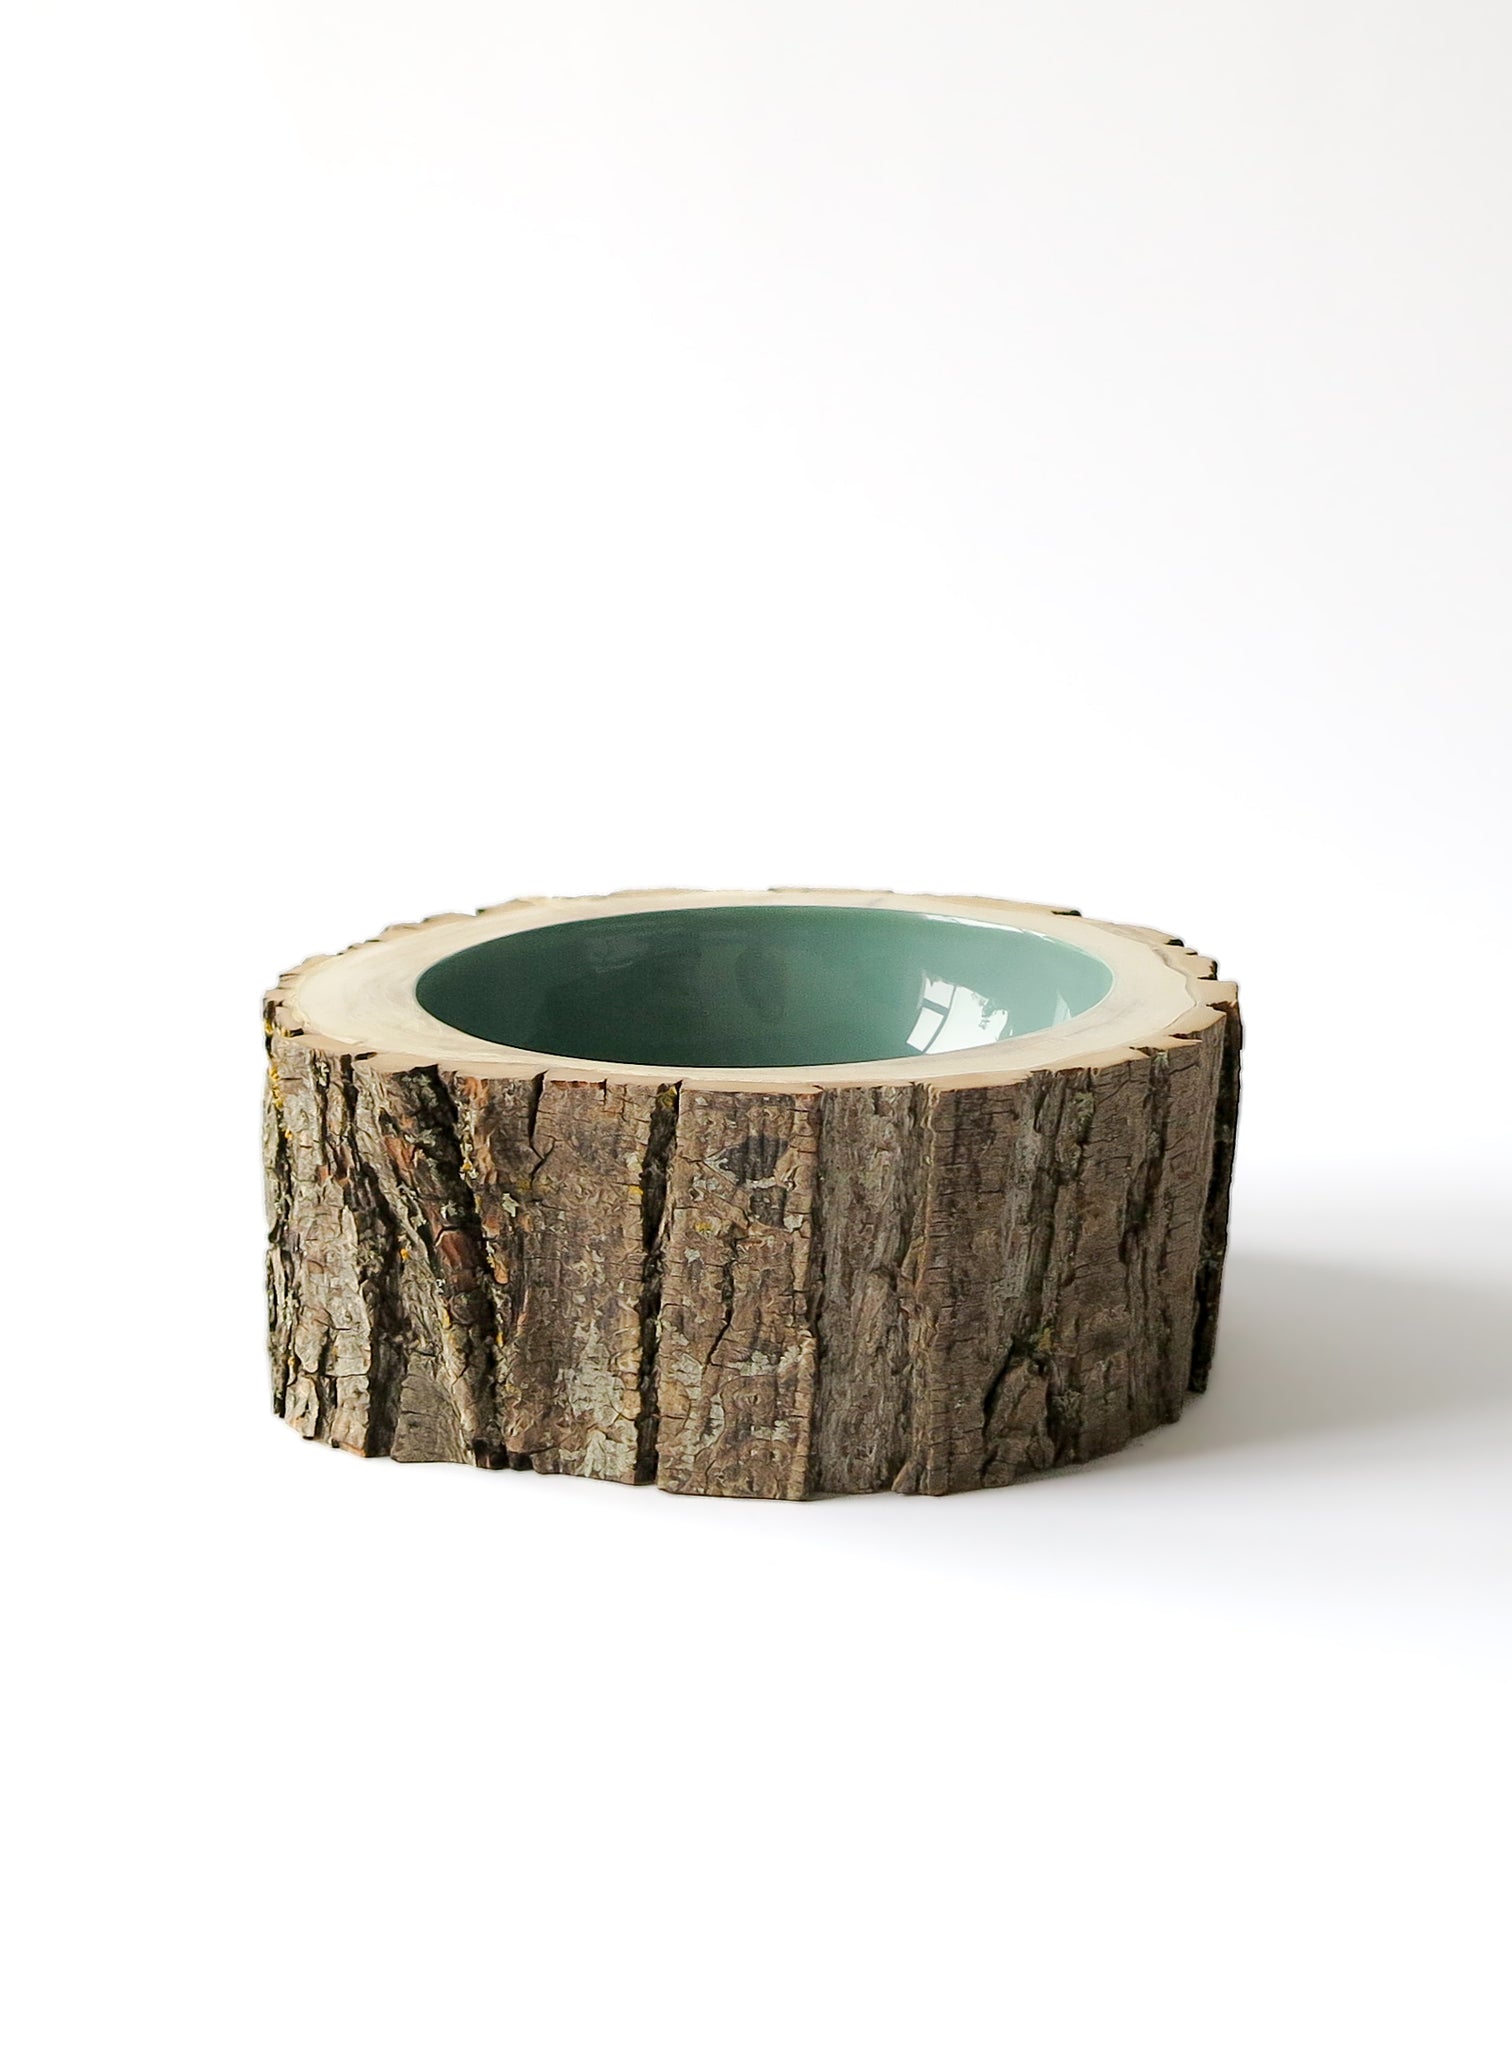 Log Bowl | Size 8 | Sage